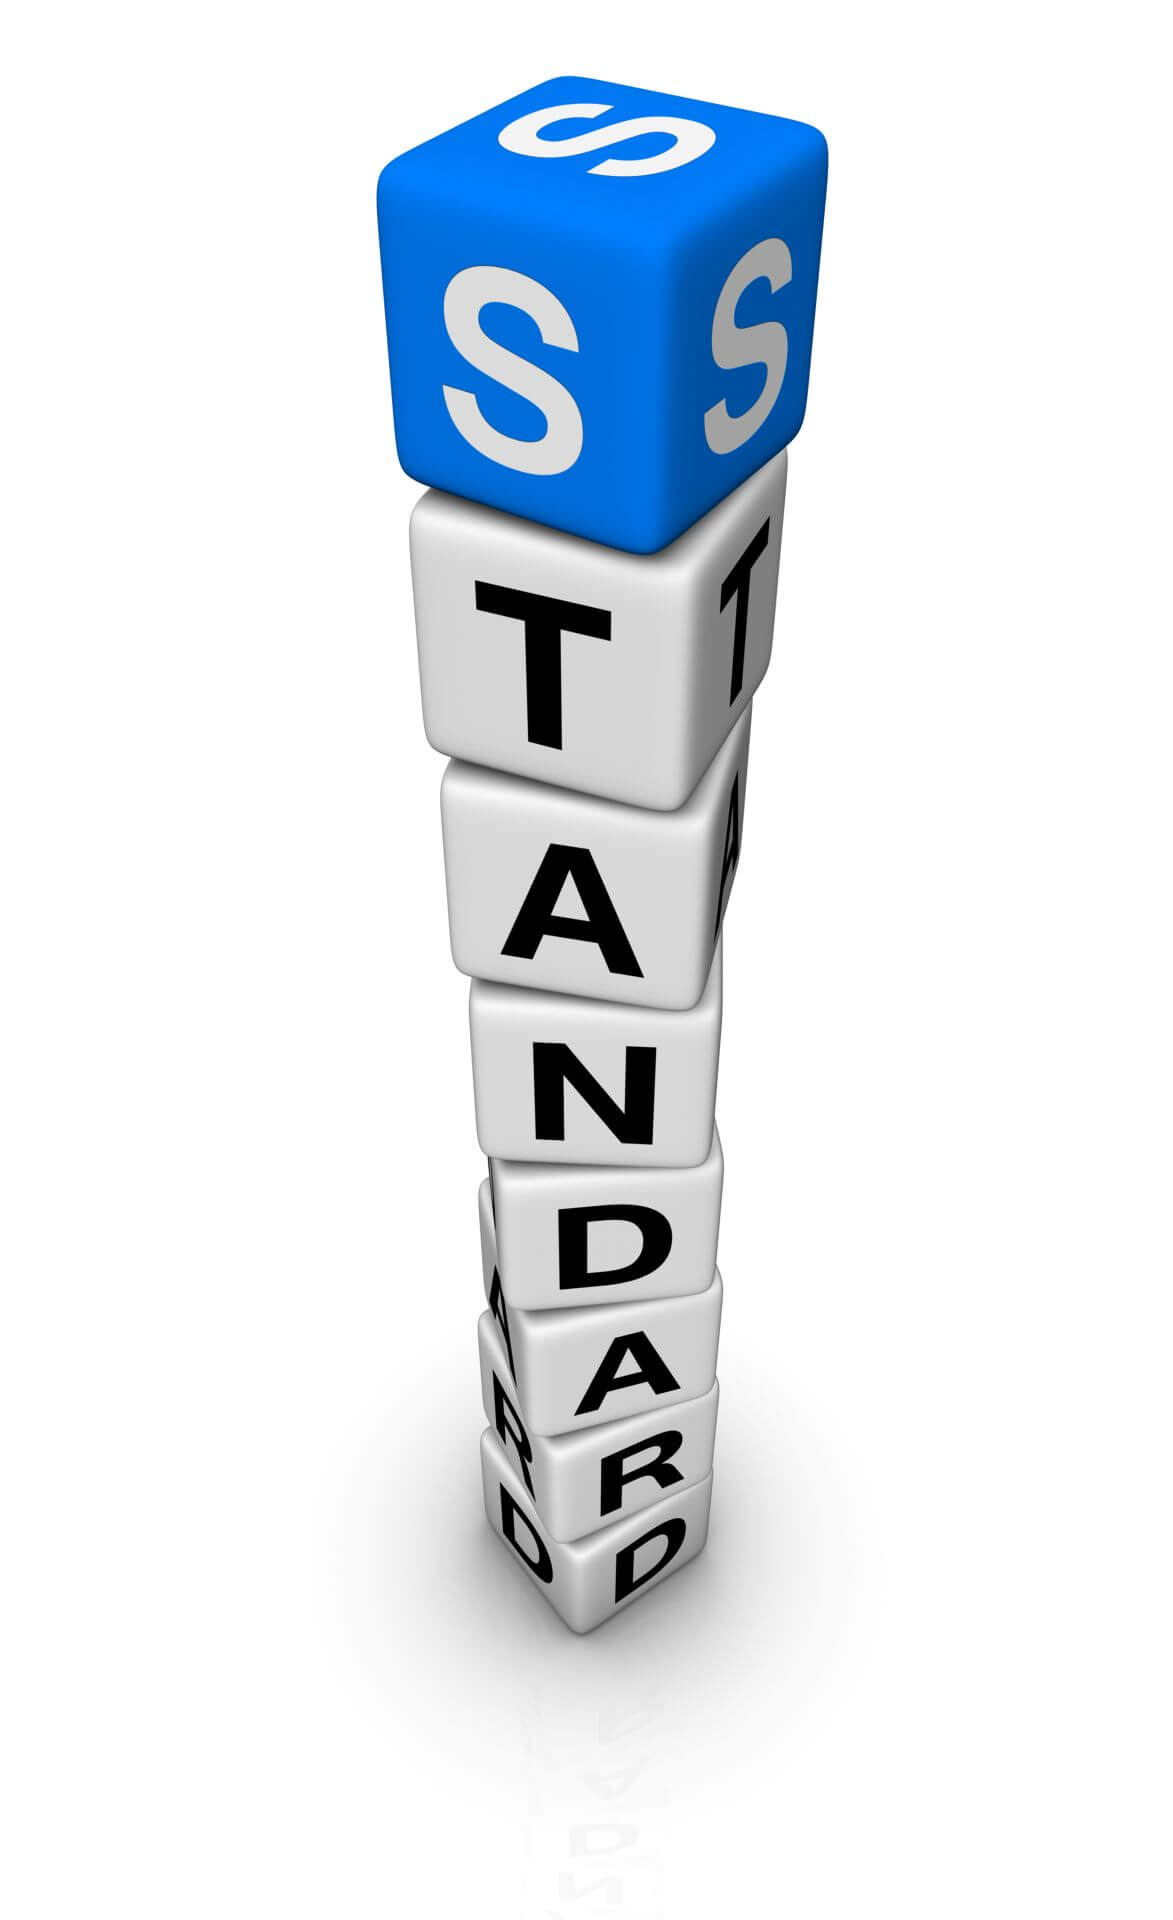 Tipuri de standarde - standarde de calitate românești, europene și internaționale - Arli Co